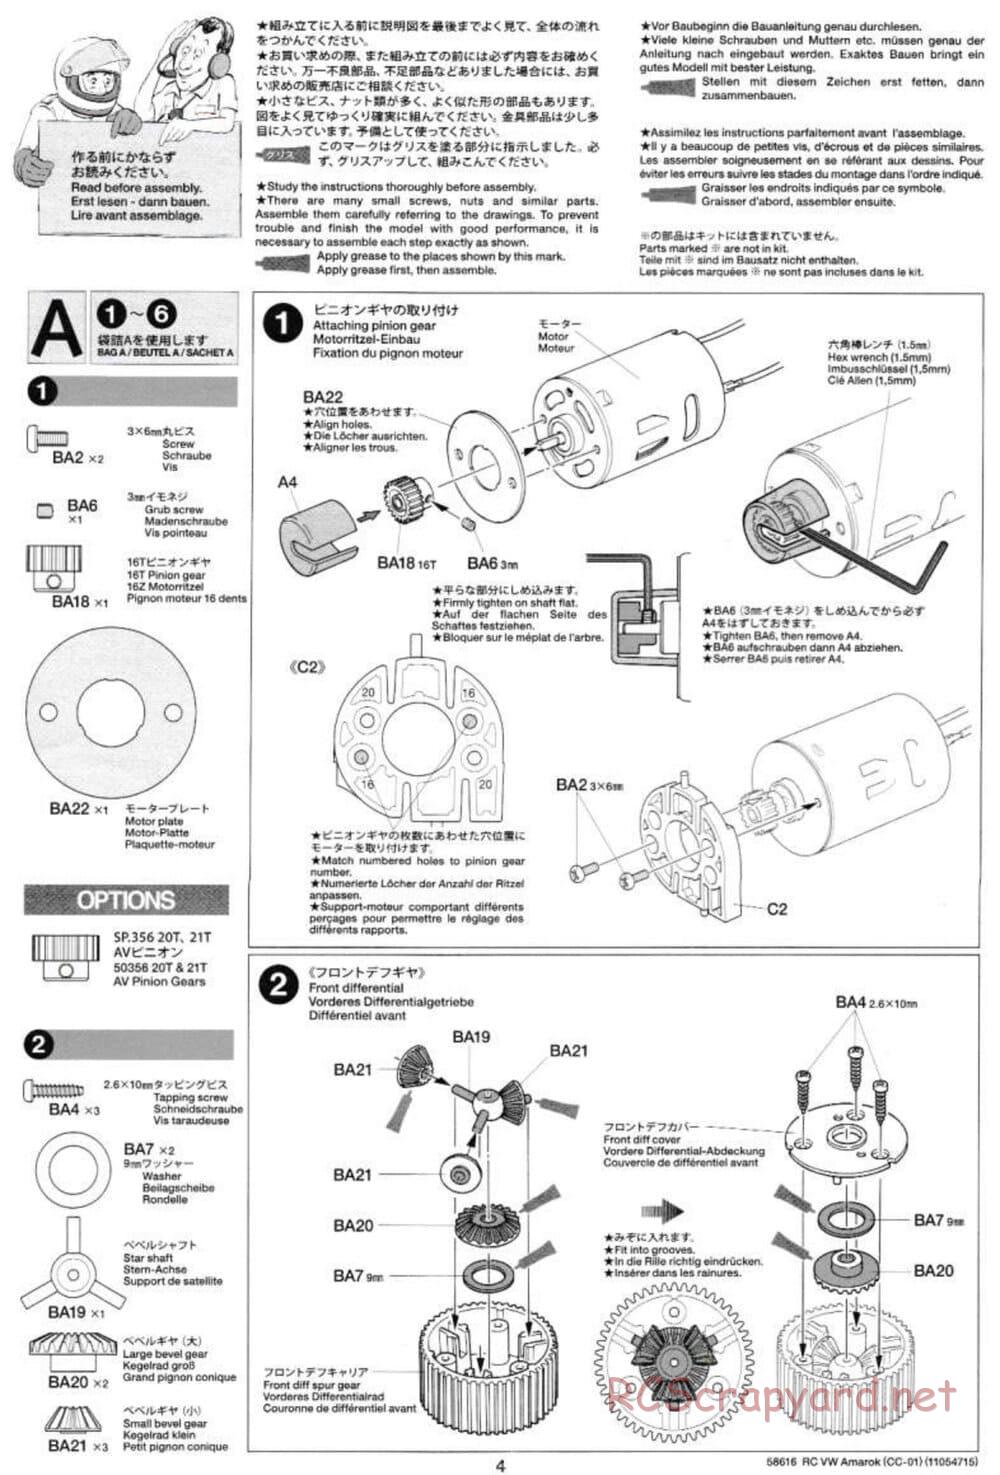 Tamiya - Volkswagen Amarok - CC-01 Chassis - Manual - Page 4